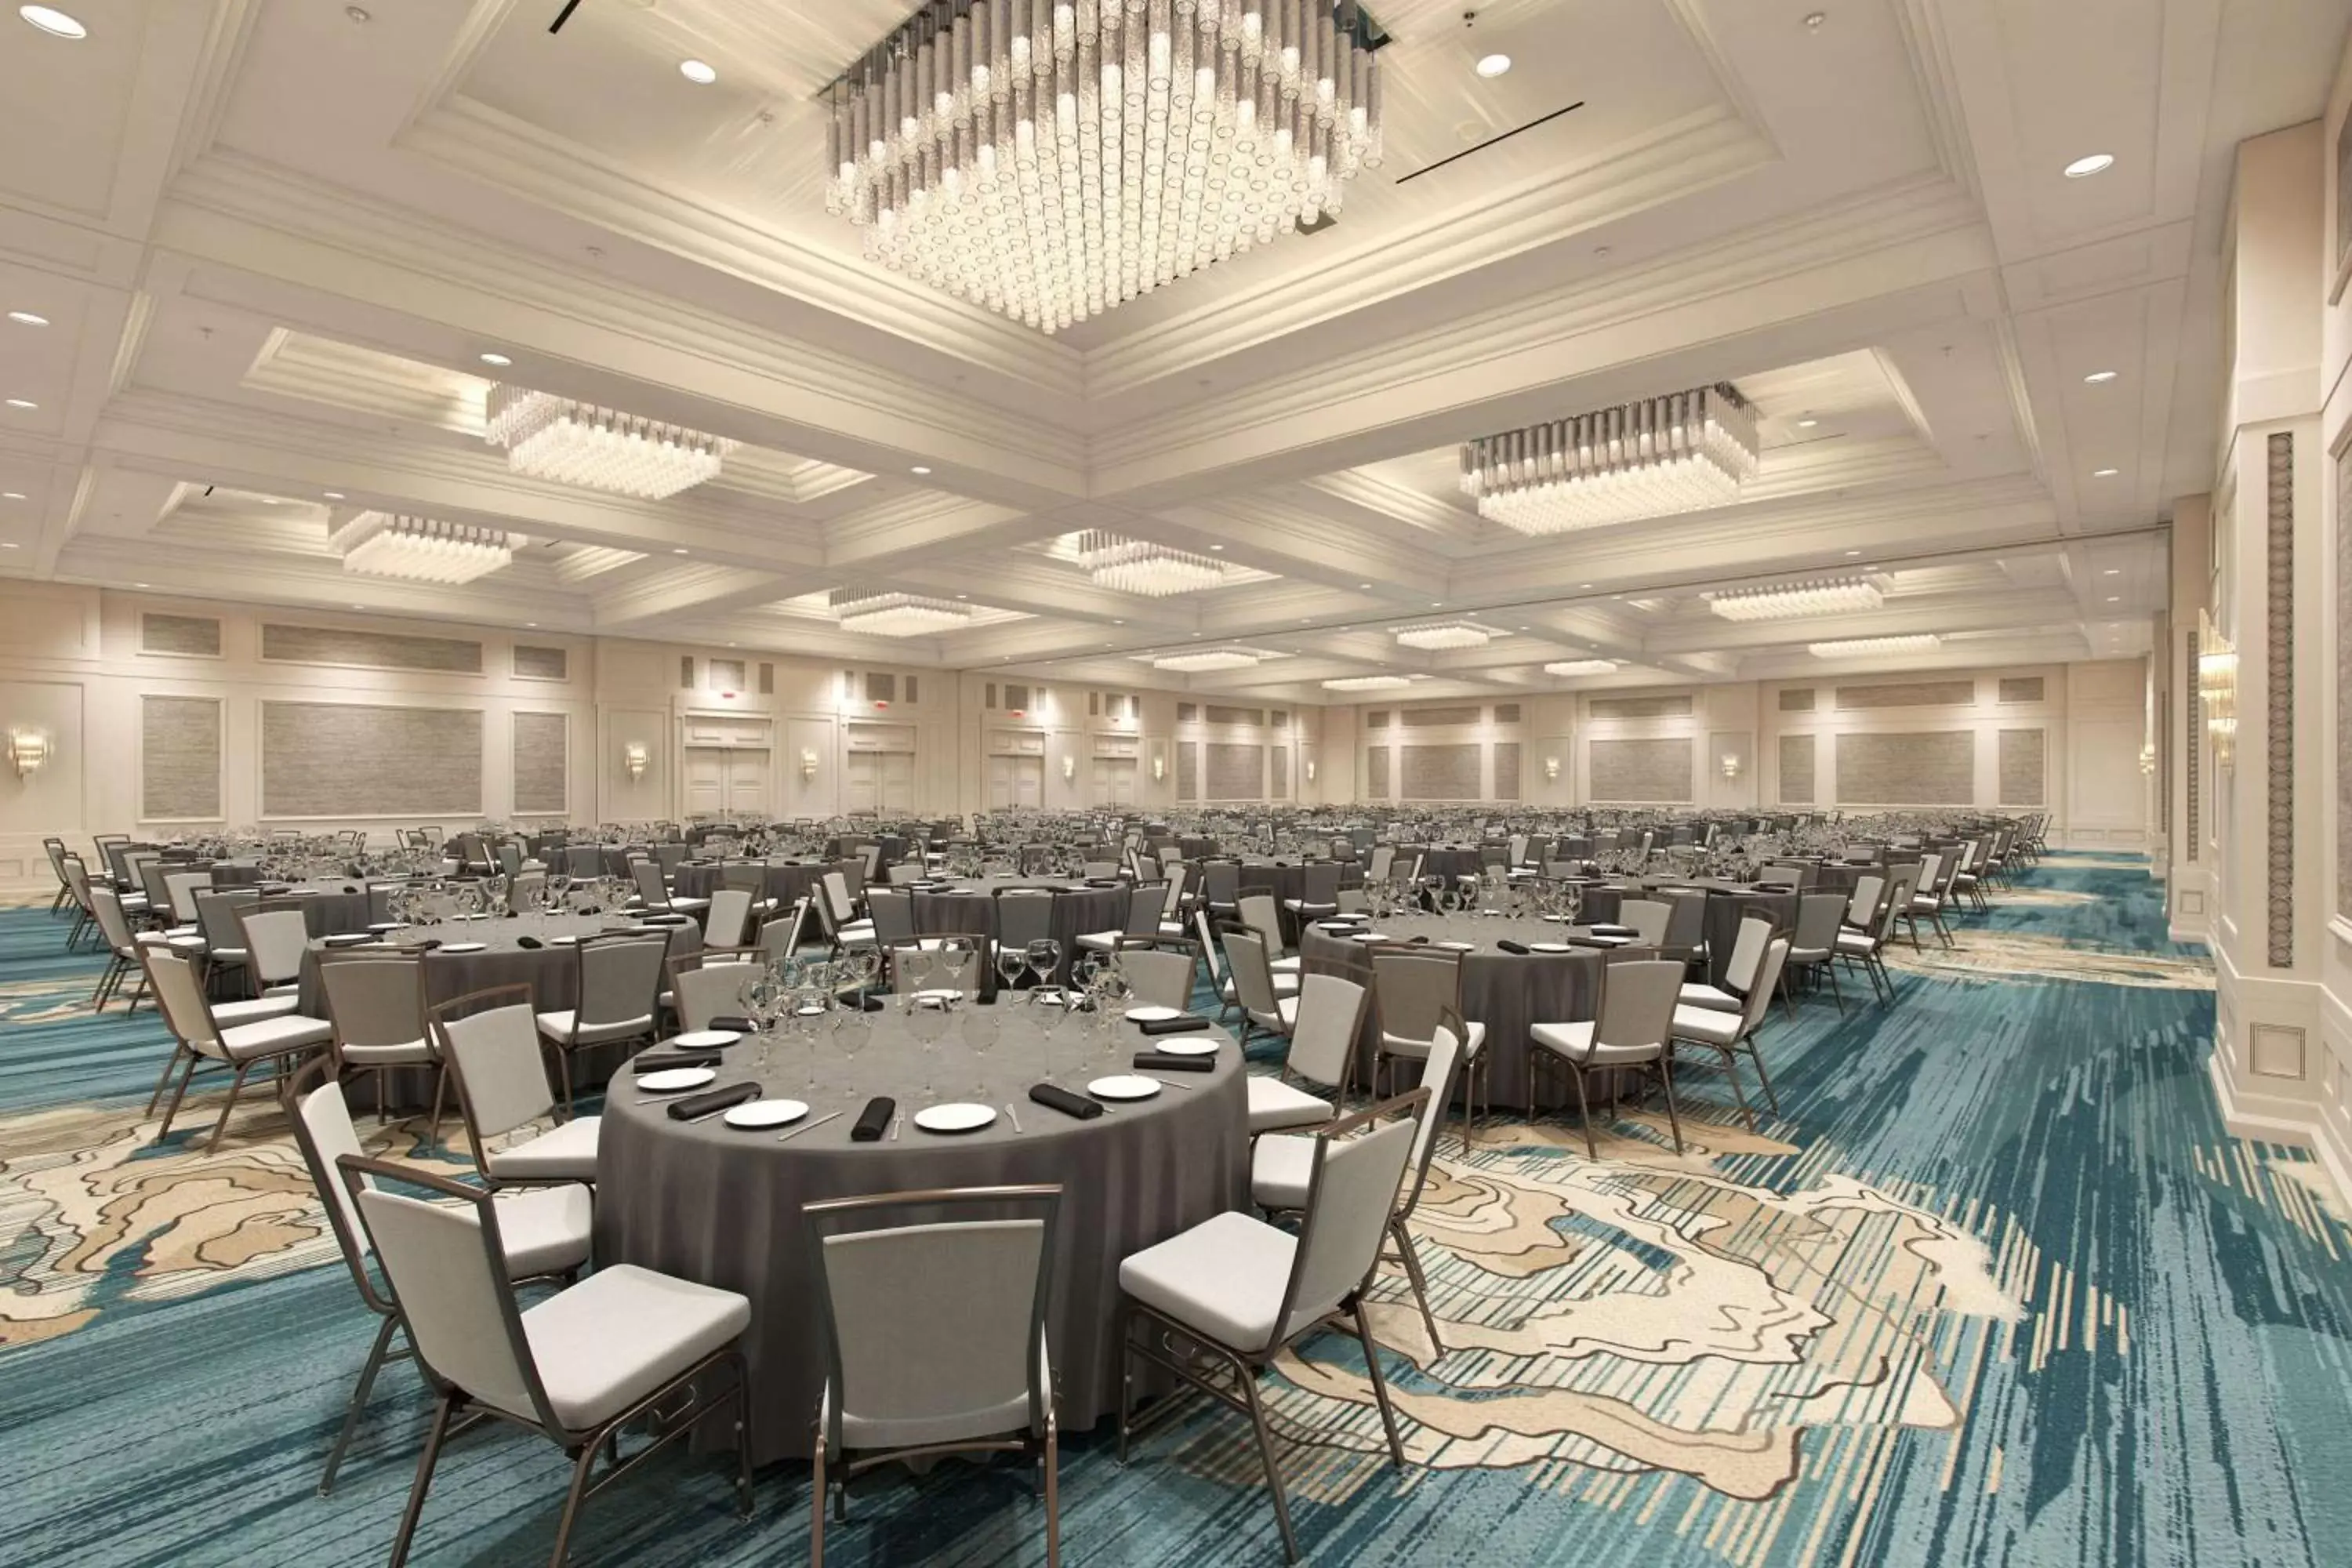 Meeting/conference room, Banquet Facilities in Waldorf Astoria Orlando